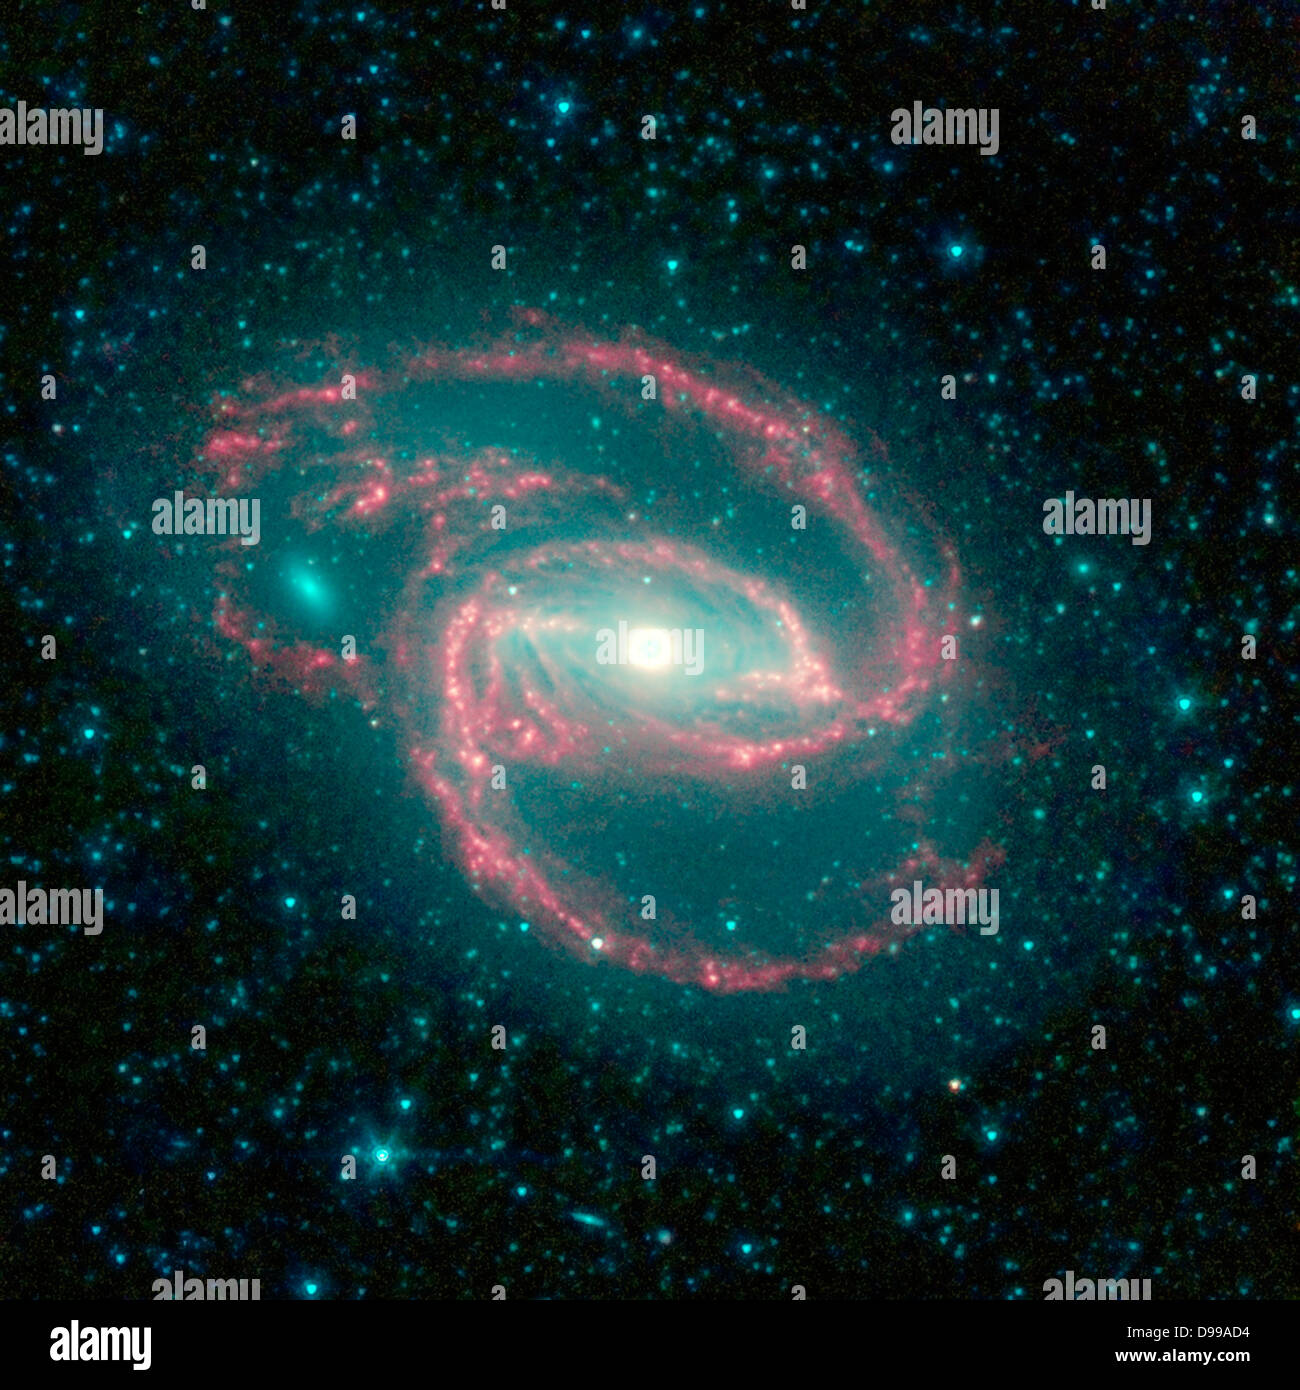 La galassia, chiamato NGC 1097, si trova a 50 milioni di anni luce di distanza. Essa è conformata a spirale come la nostra Via Lattea, con lunghi bracci spindly di stelle. Il 'occhio' al centro della galassia è un buco nero circondato da una corona di stelle. Spitzer. Foto Stock